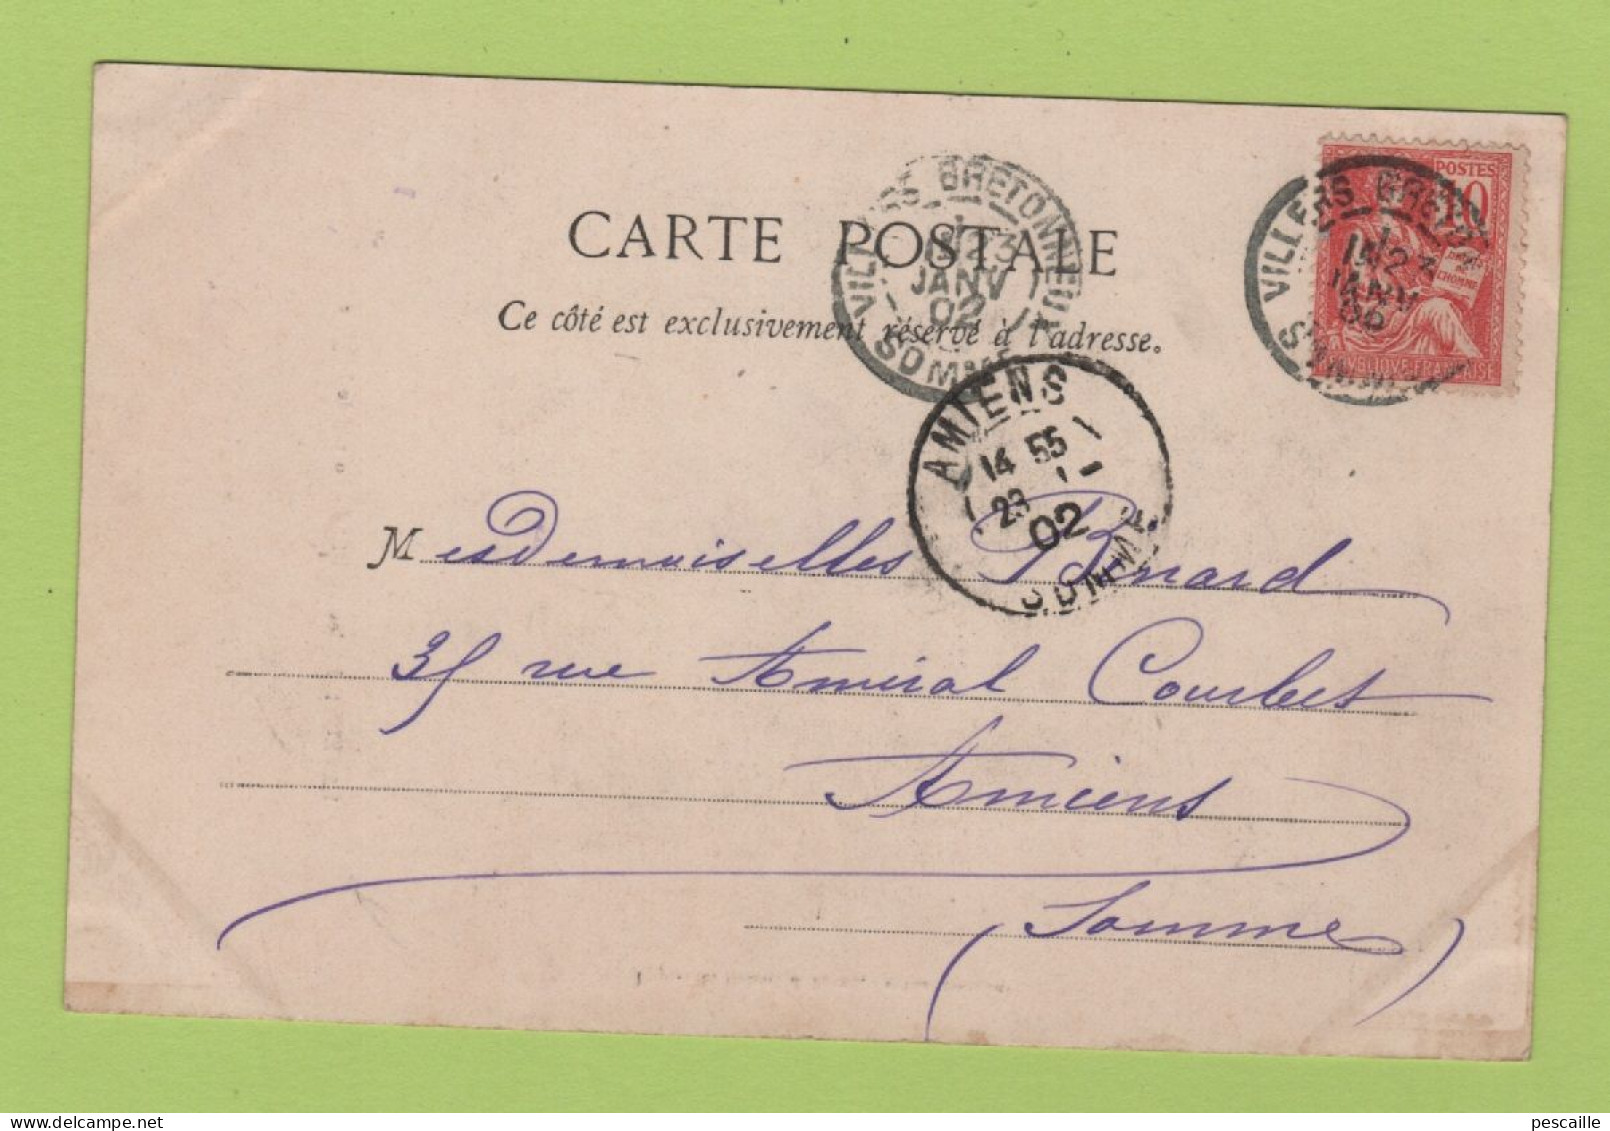 80 SOMME - CP LANEUVILLE LES CORBIE - PORTAIL DE L'EGLISE - IMP. LIB. DUBOIS & BLEUX - CIRCULEE EN 1902 - Corbie